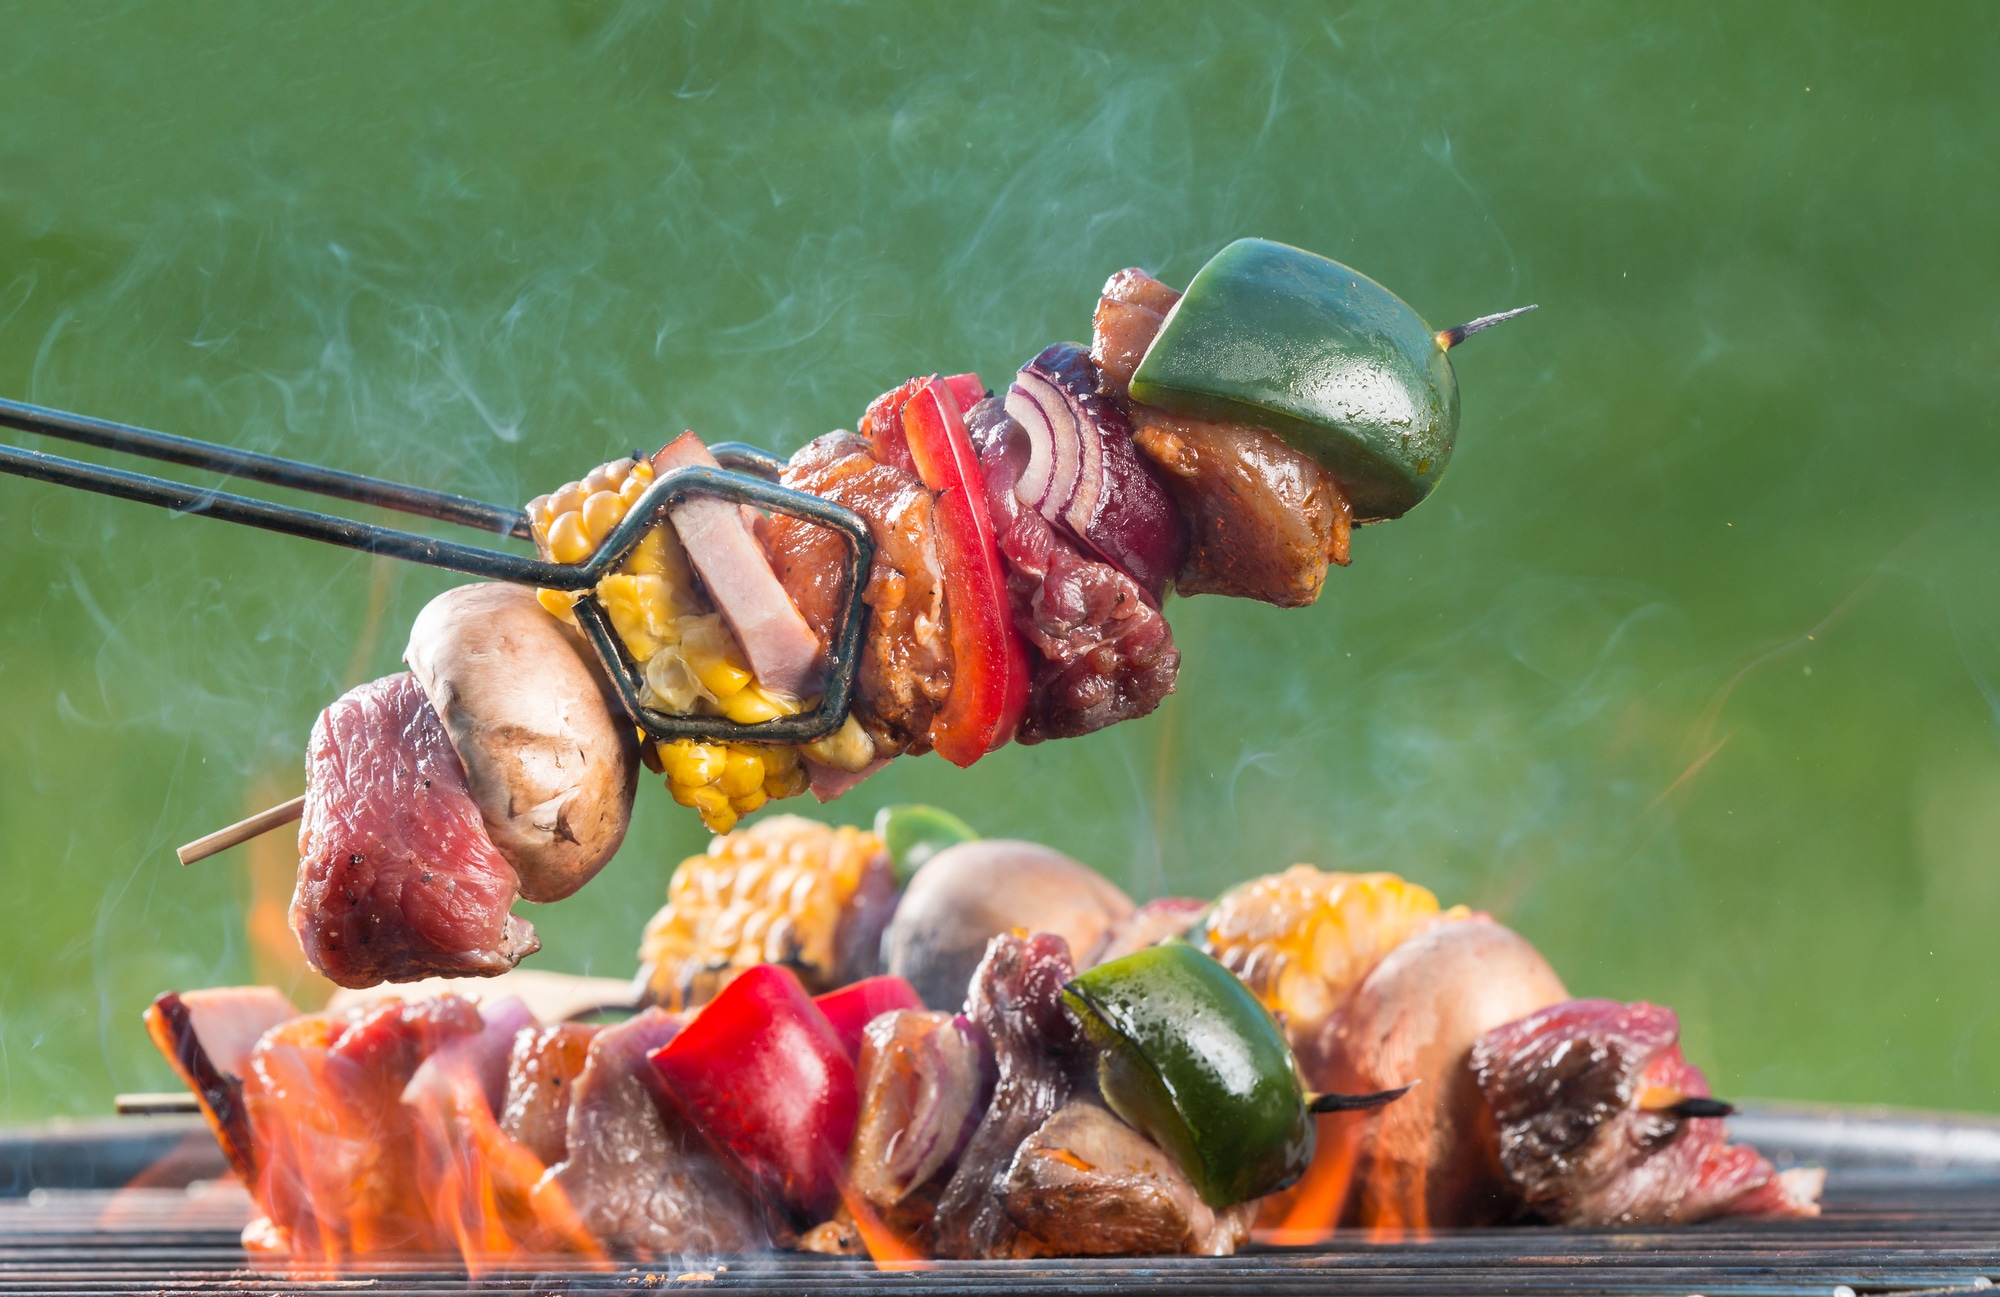 Découvrez les incontournables de l'été les 7 meilleurs plats à préparer au barbecue !